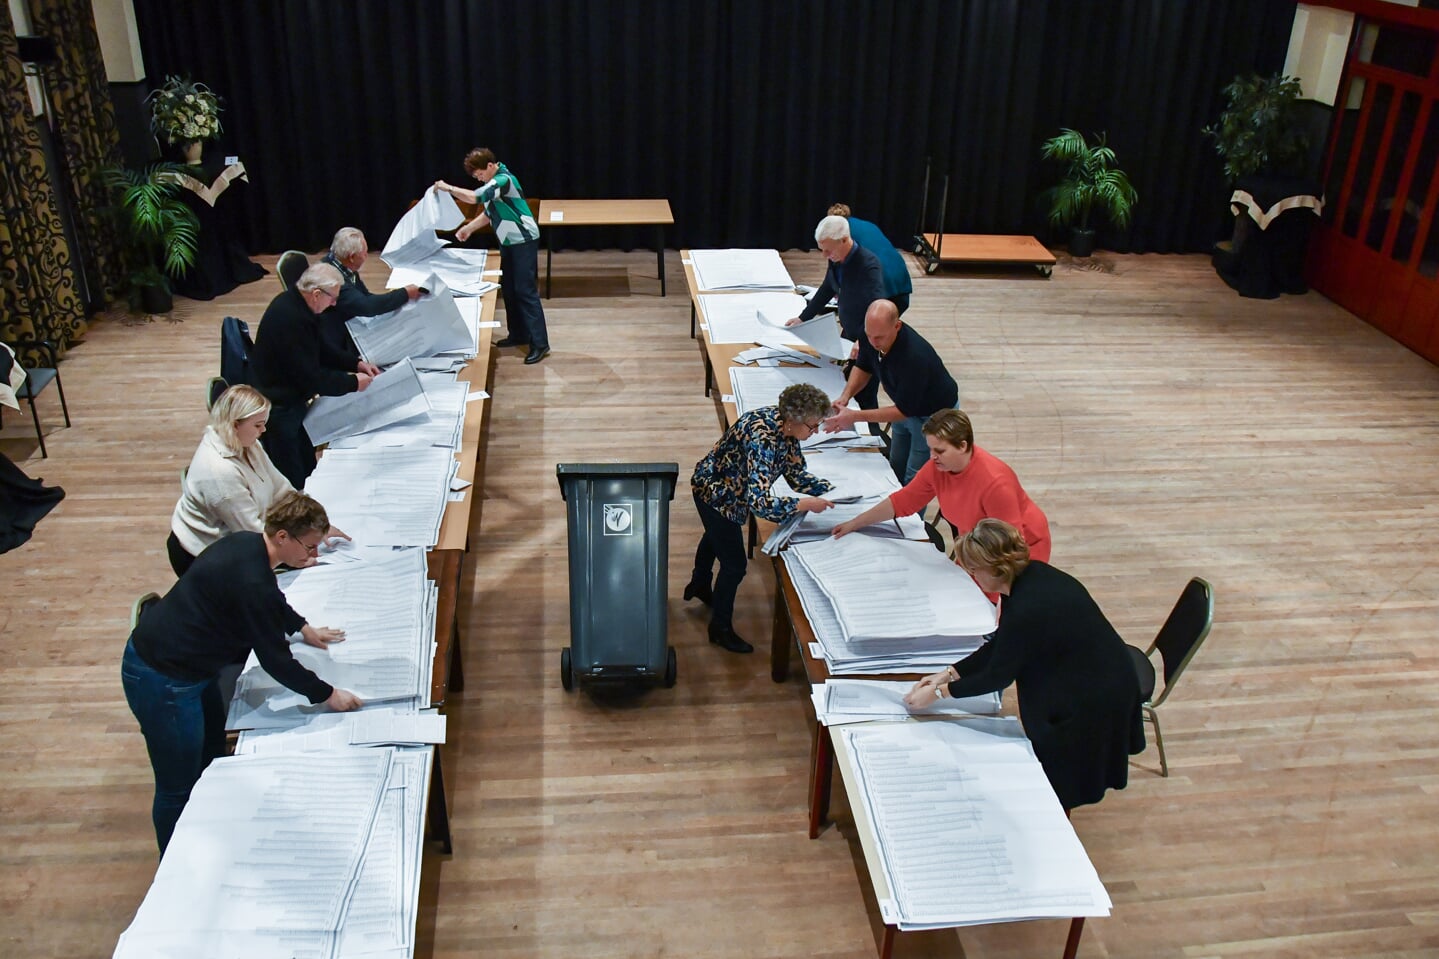 Tellen van de stemmen voor de Tweede Kamerverkiezingen in het Zalencentrum Sint Nyk